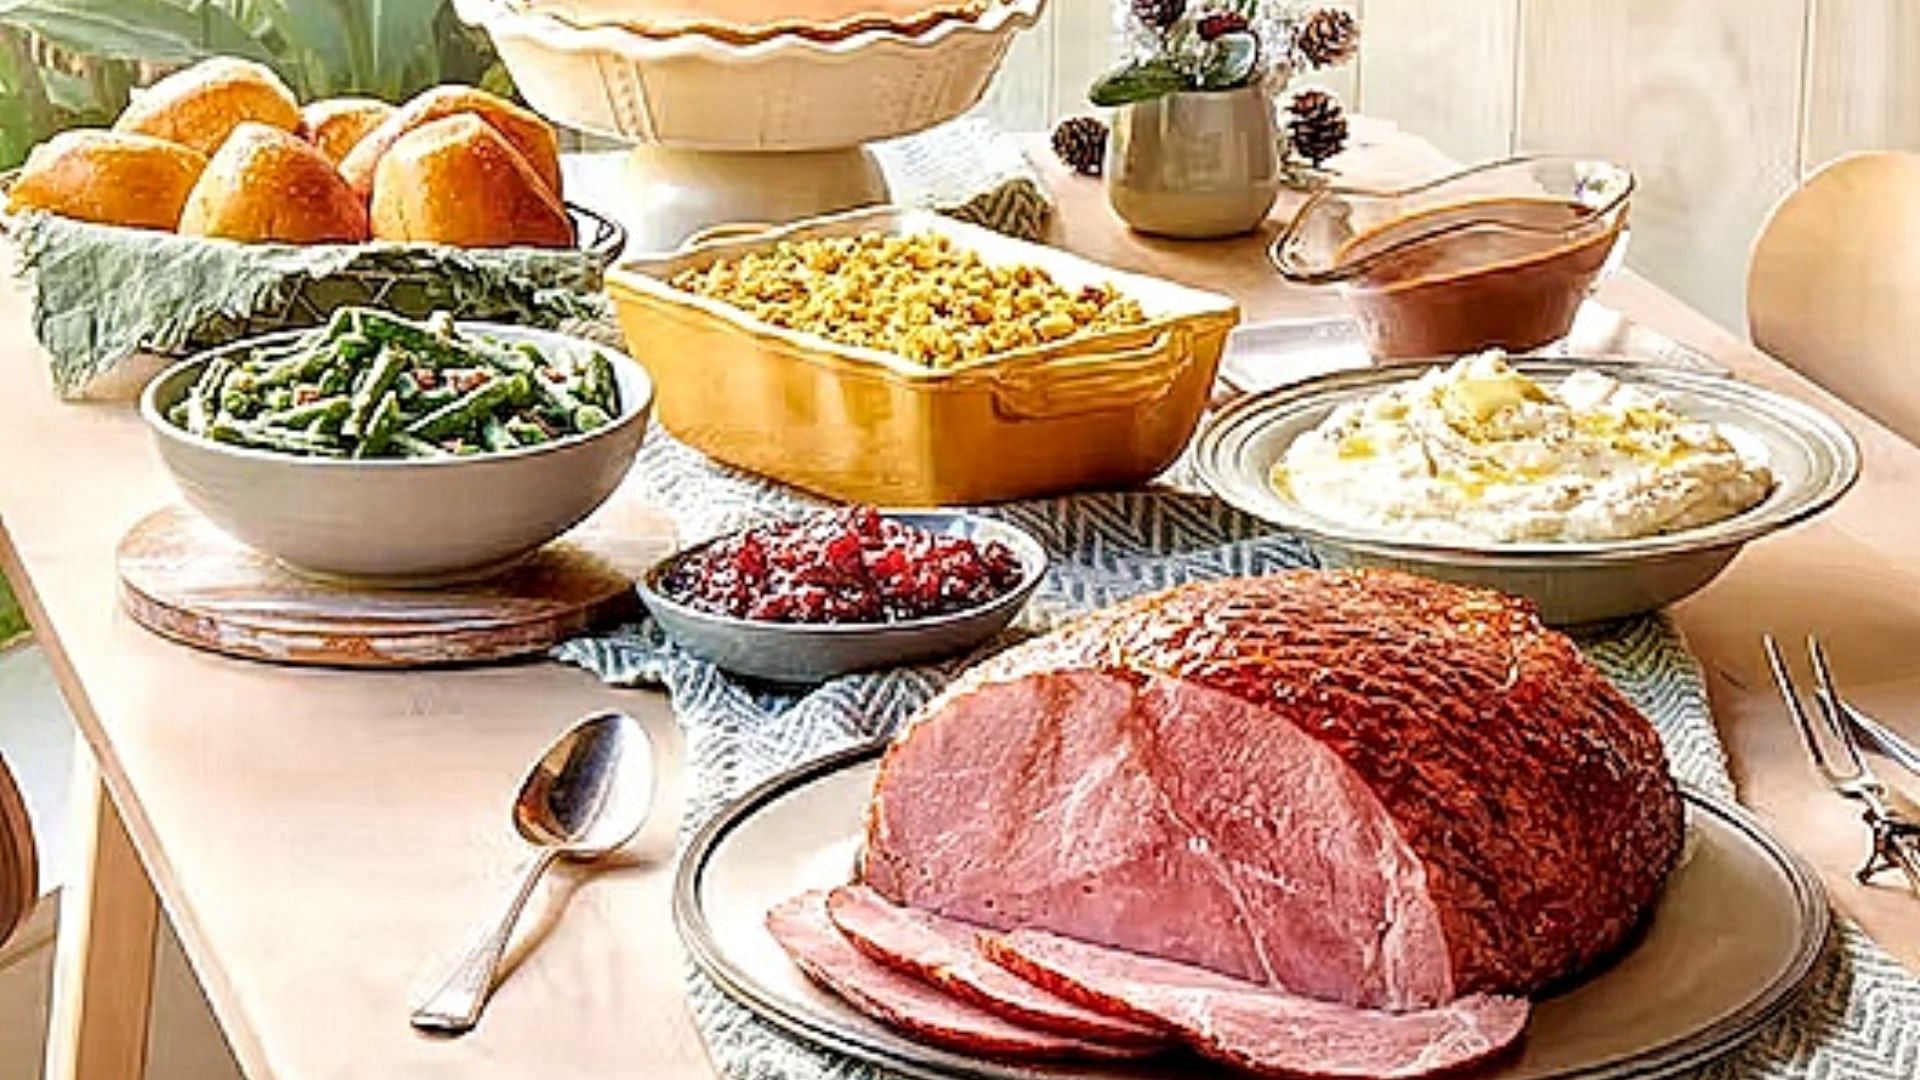 Holiday Glazed Ham Meal (Image via Golden Corral)